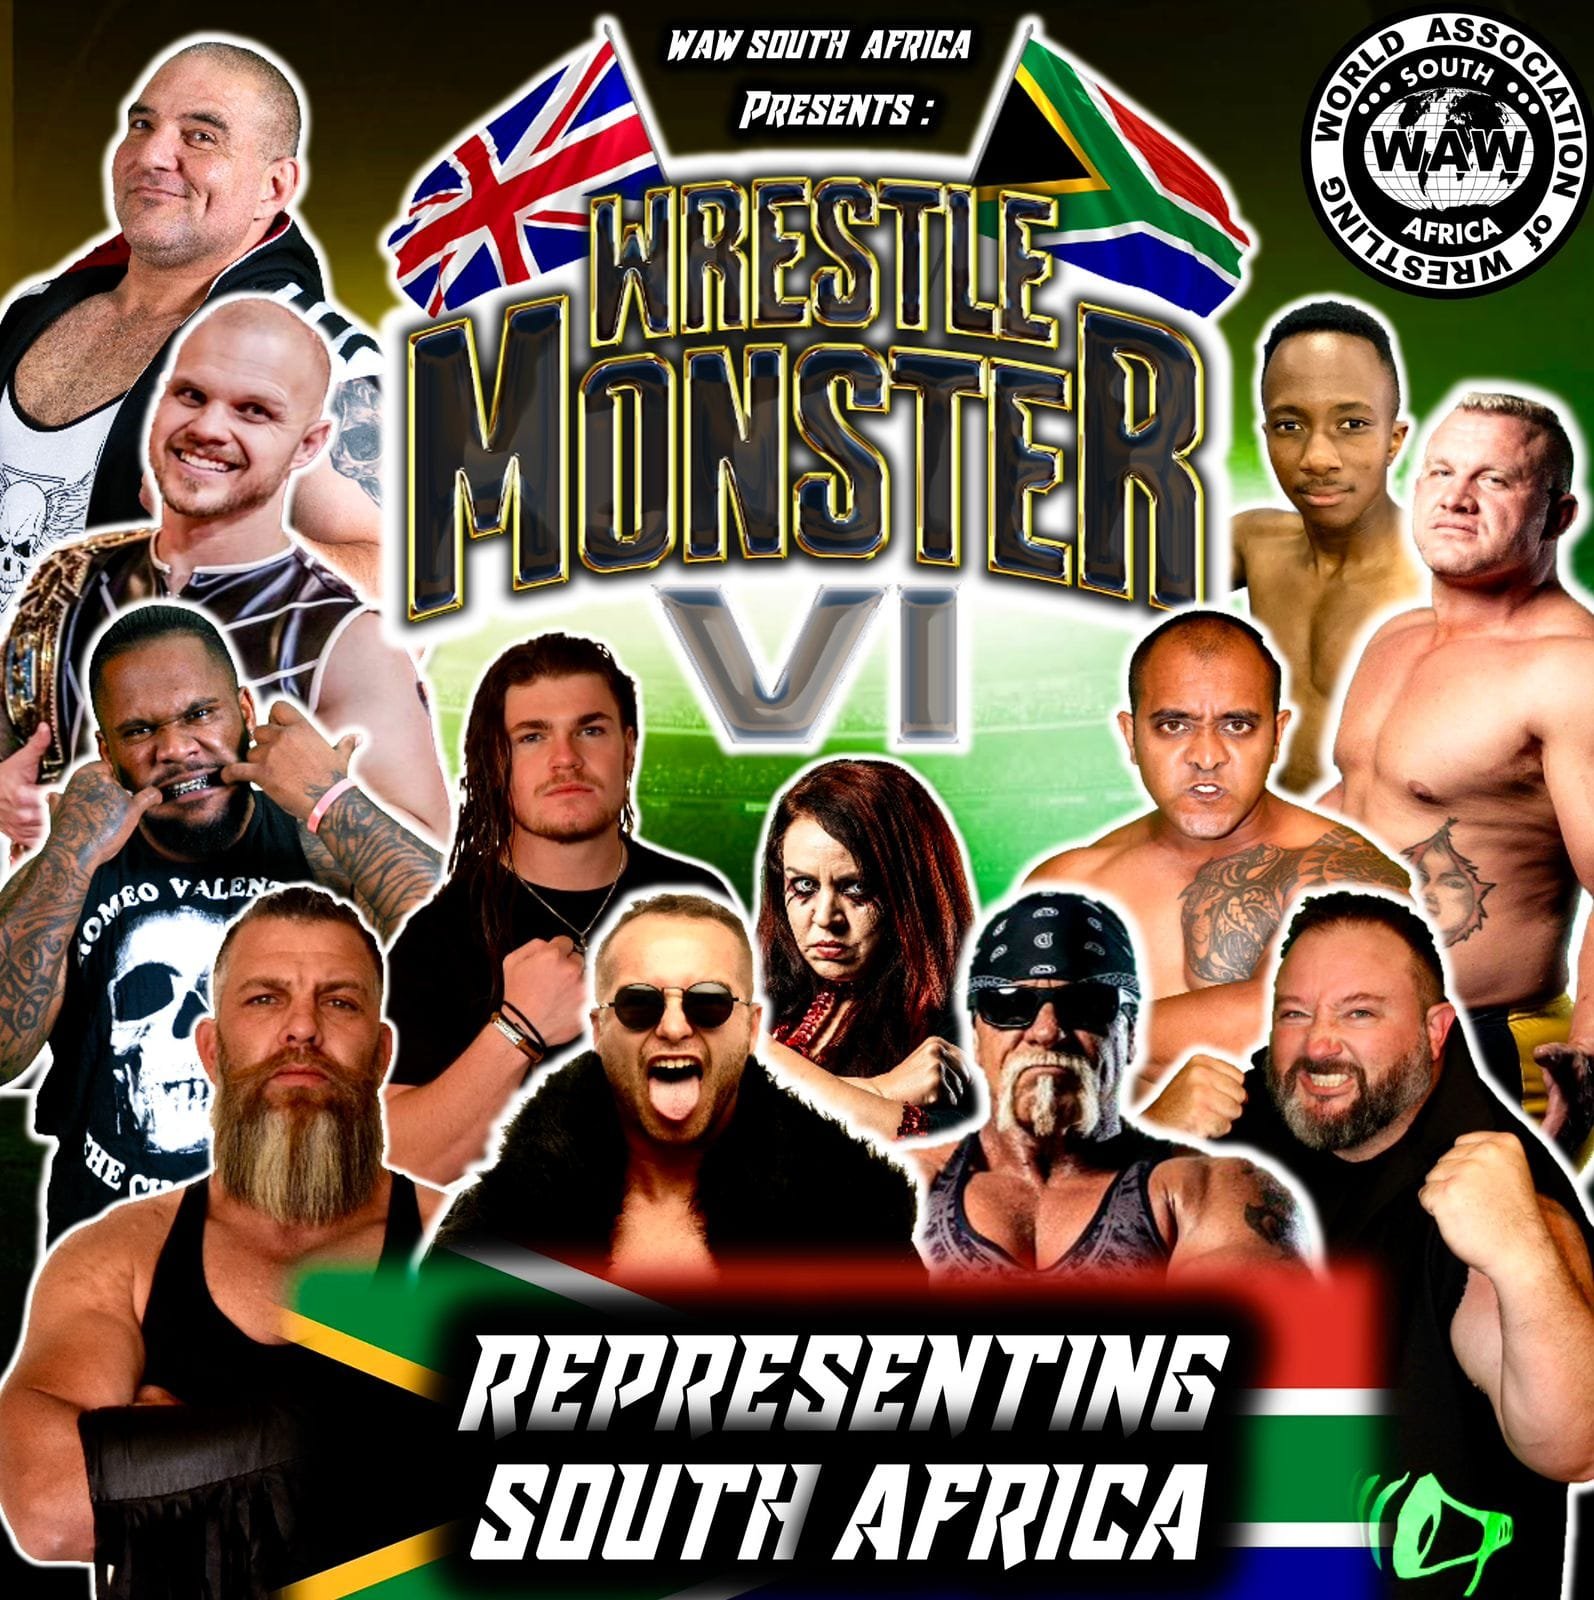 South Africa WrestleMonster.jpeg